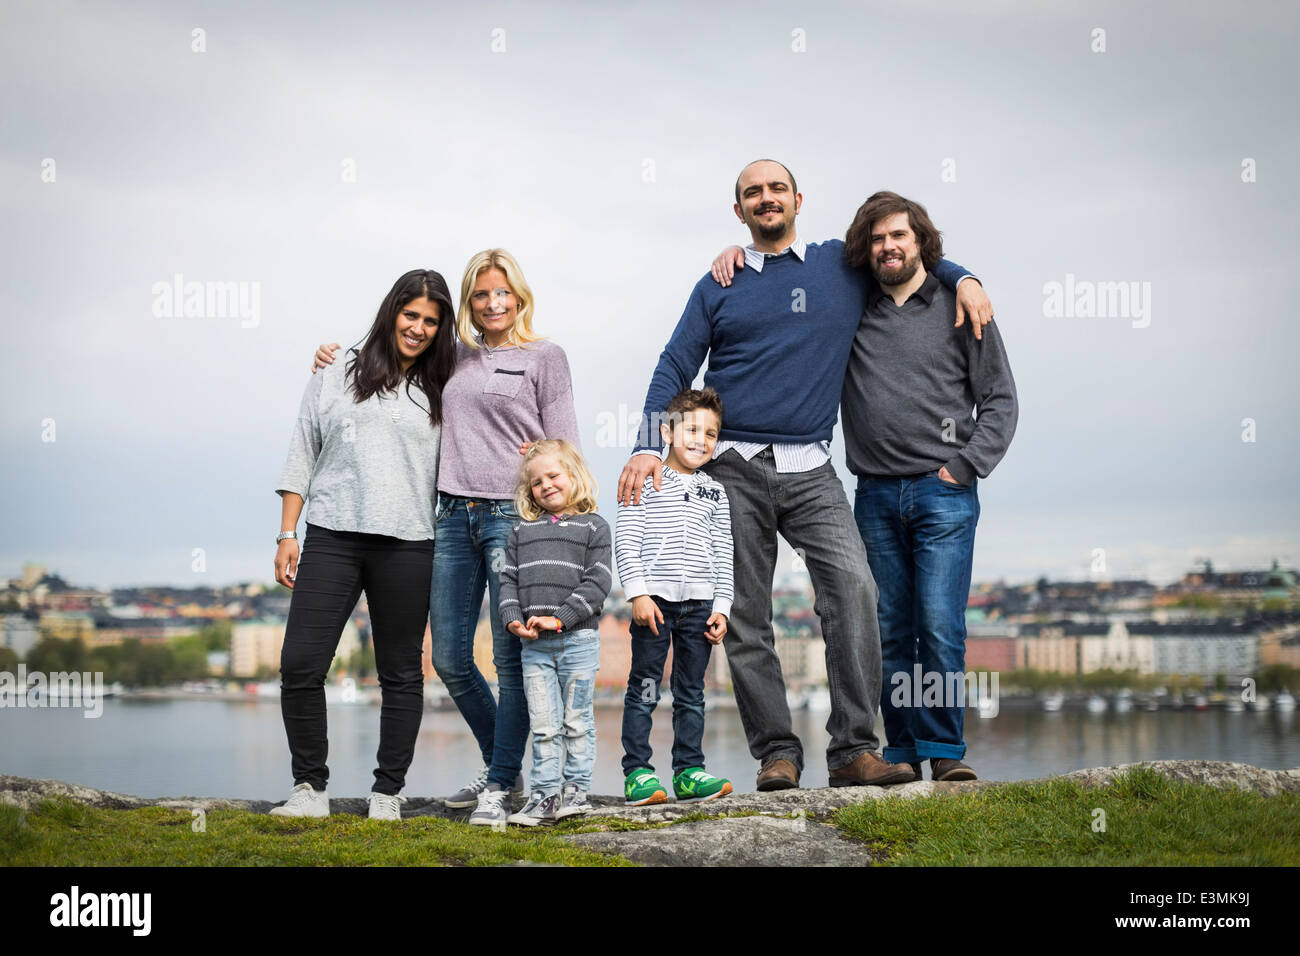 A piena lunghezza Ritratto di famiglie di omosessuali in piedi insieme sul lungolago Foto Stock